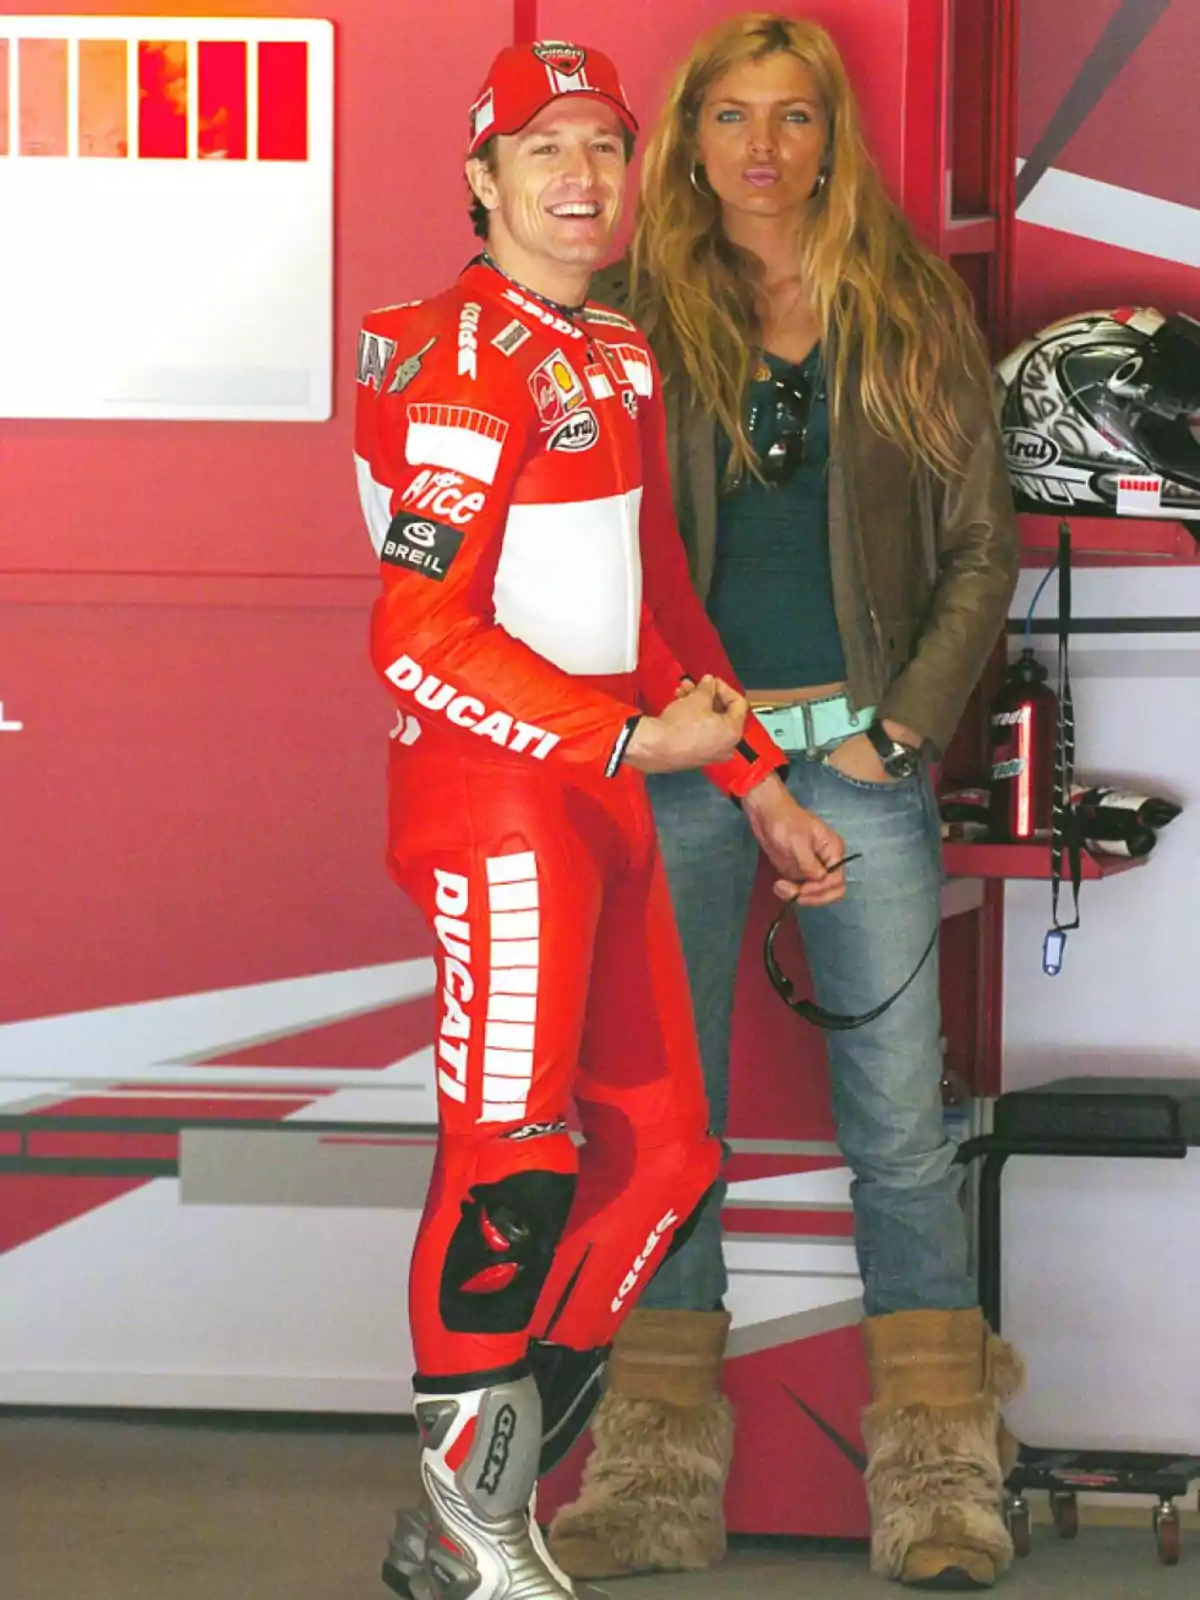 Un piloto de motociclismo con traje rojo de Ducati sonríe junto a una mujer rubia en un garaje.